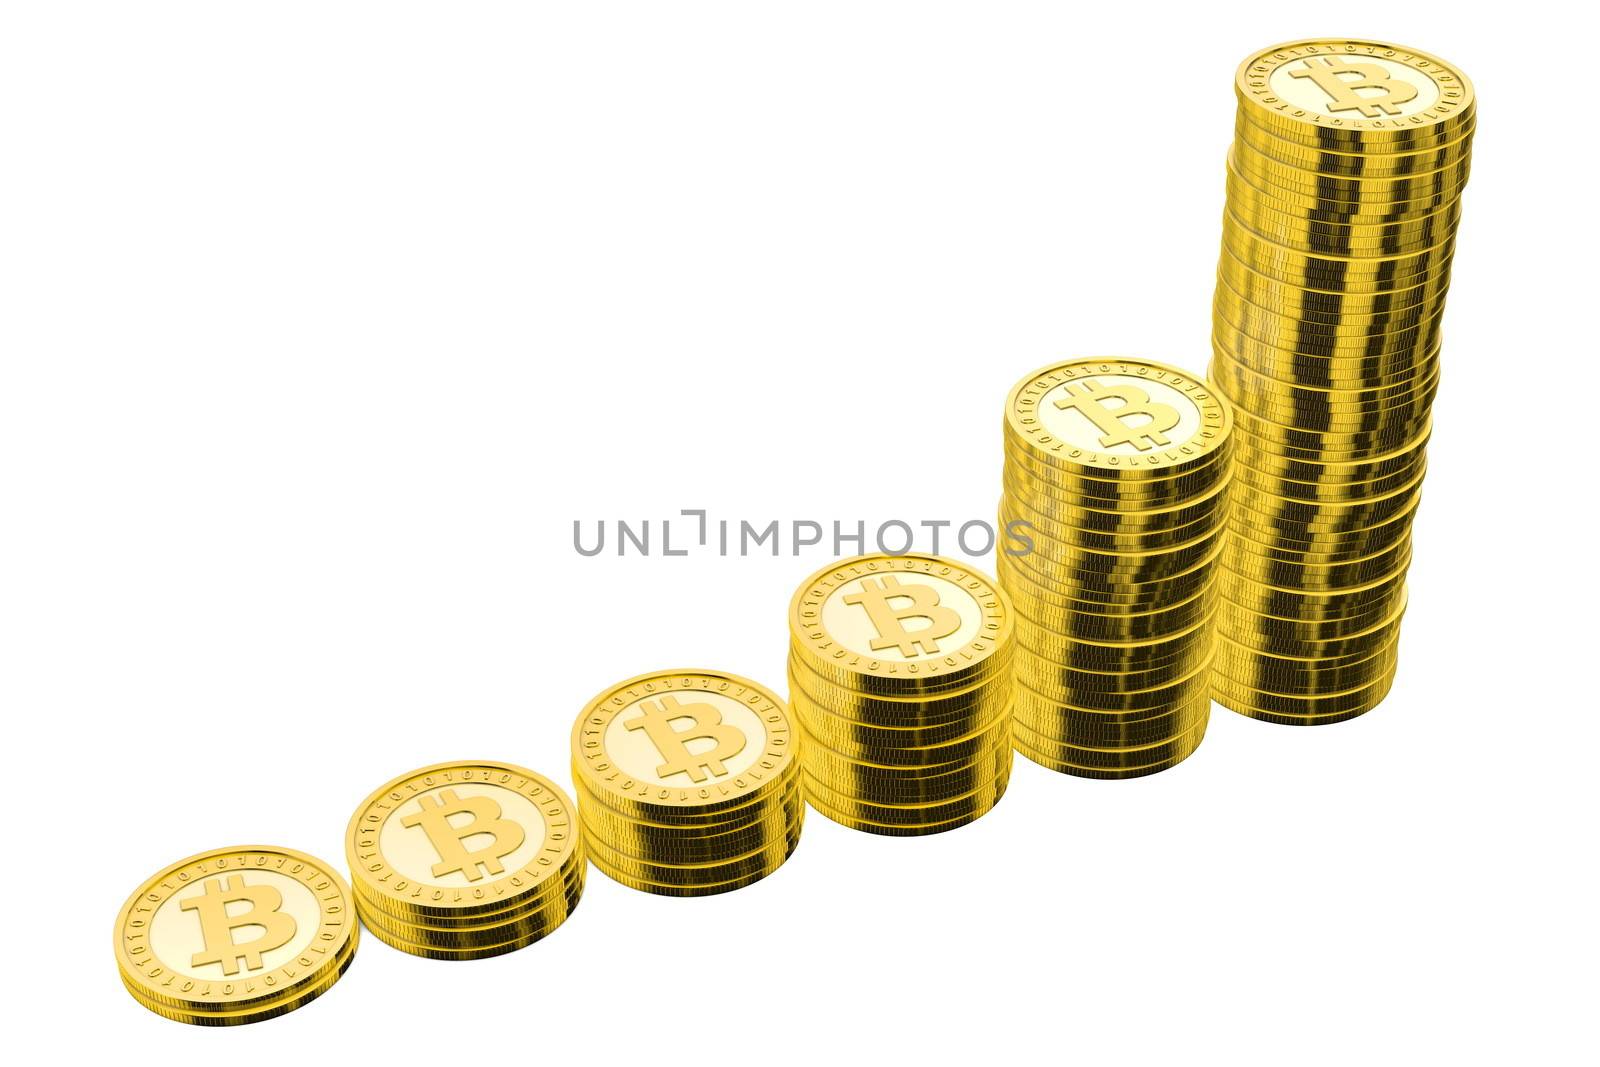 6 stacks of golden bitcoins arranged in increasing height